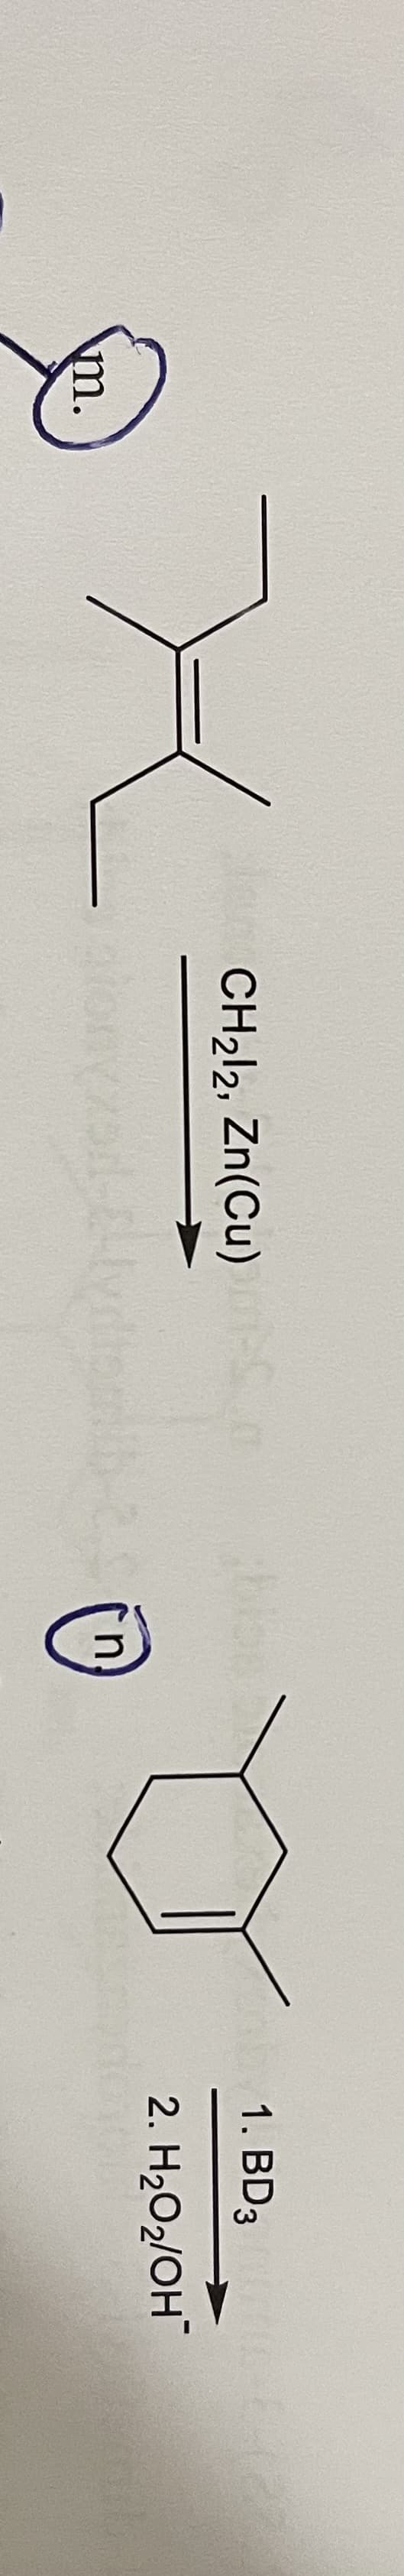 CH212, Zn(Cu)m-Sm
blos
1. BD3 27
2. H2O2/OH
m.
(n
